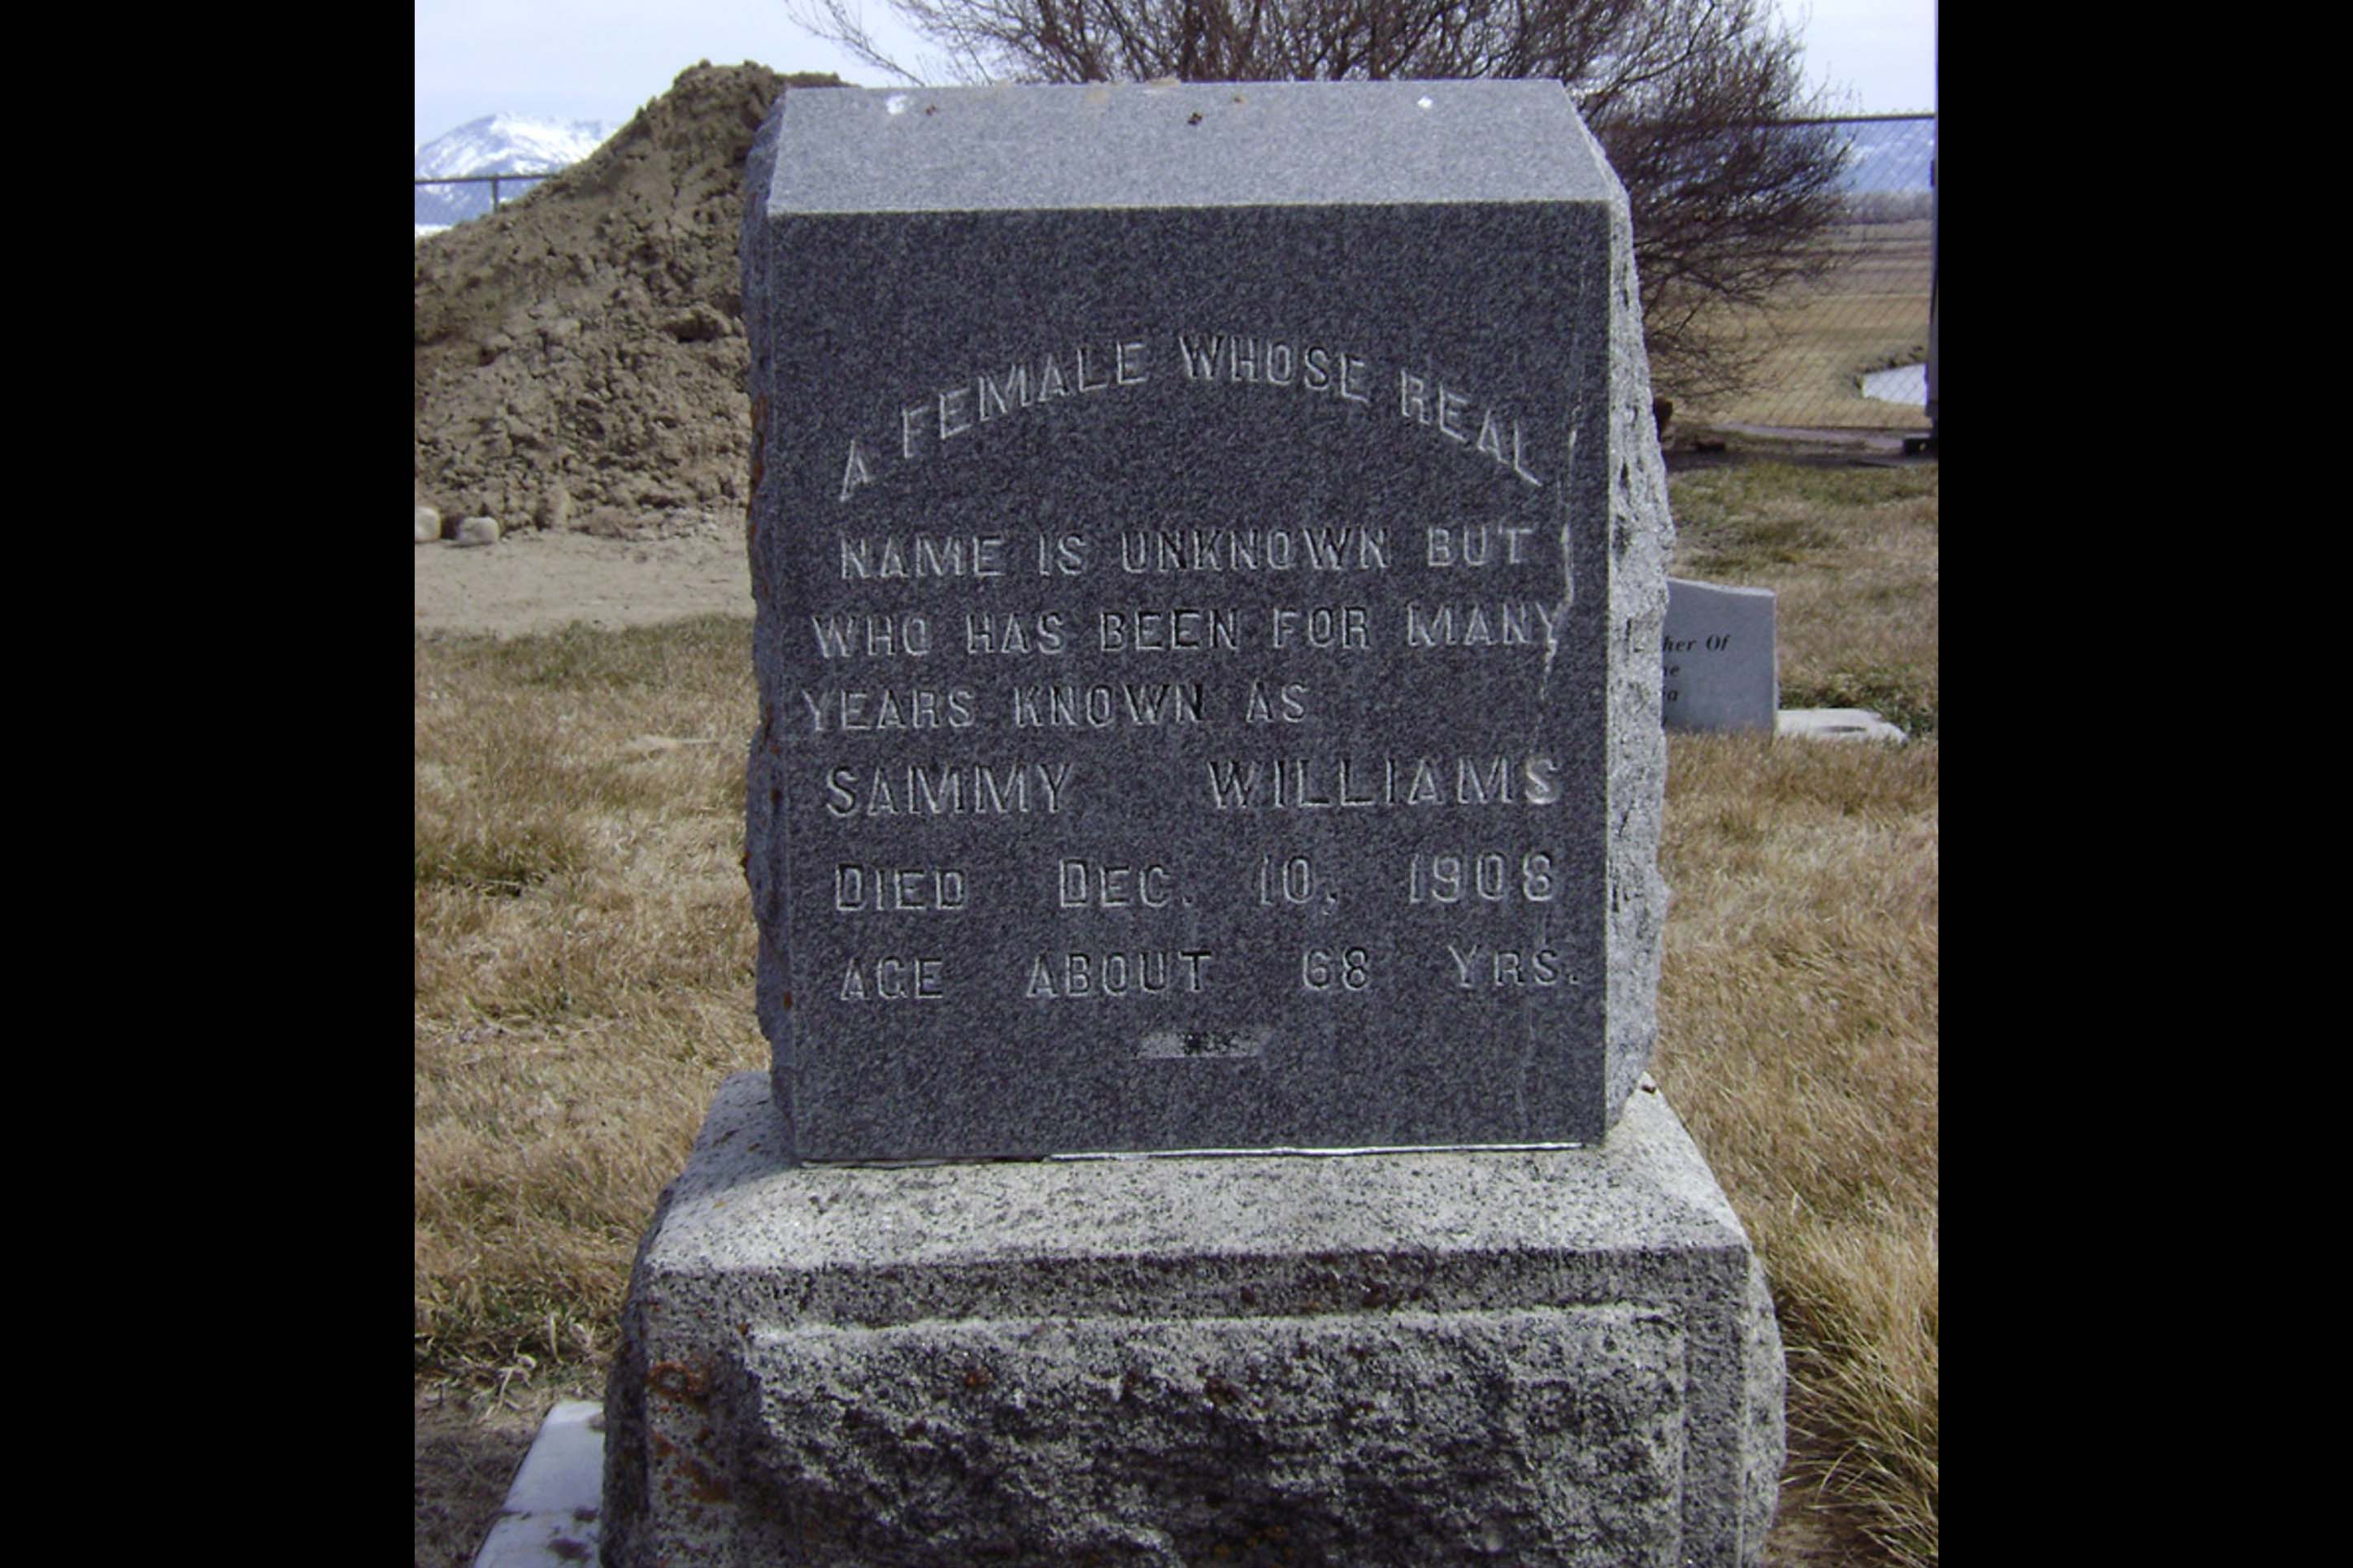 Sammy Williams' gravestone: Meadowview Cemetery, Manhattan, MT. Photograph by Rachel Phillips.